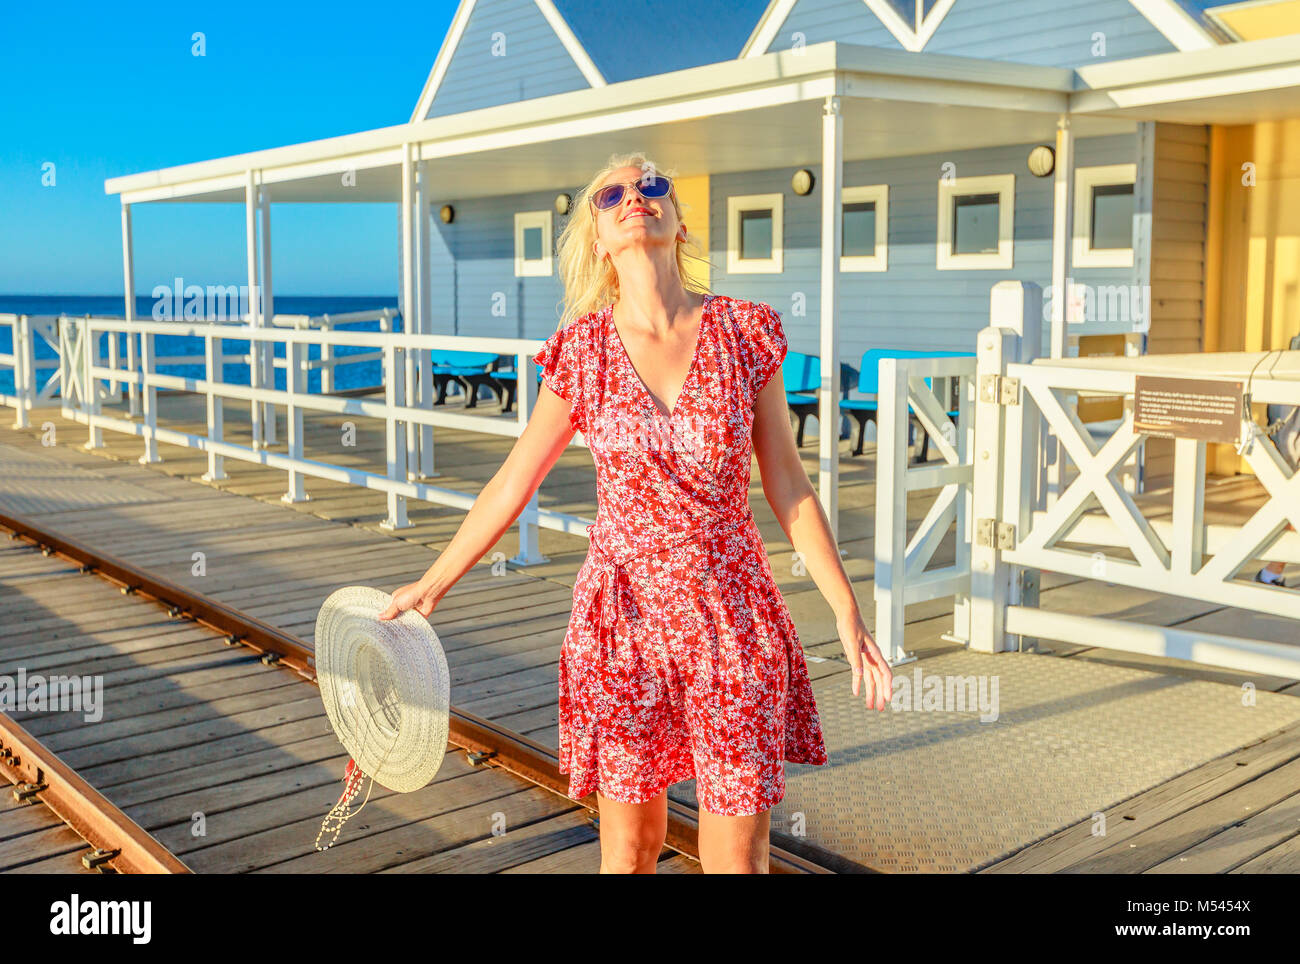 Sorglos blonde Frau genießt den Sonnenuntergang Licht auf berühmten busselton Holzsteg in Busselton, Western Australia. Australische reisen Freiheit. Weibliche Touristen in der legendären Ort. Stockfoto